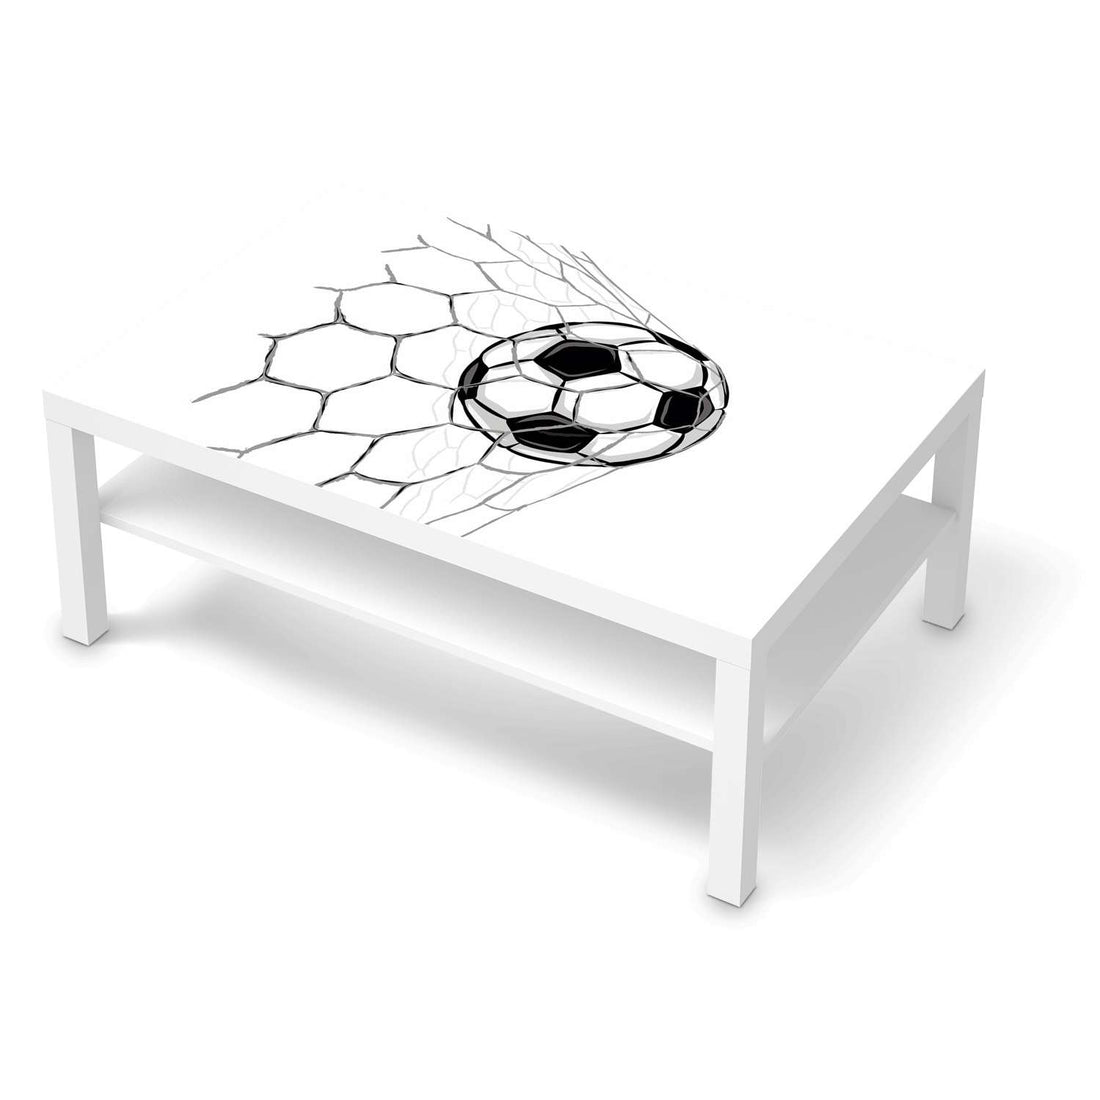 Klebefolie Eingenetzt - IKEA Lack Tisch 118x78 cm - weiss